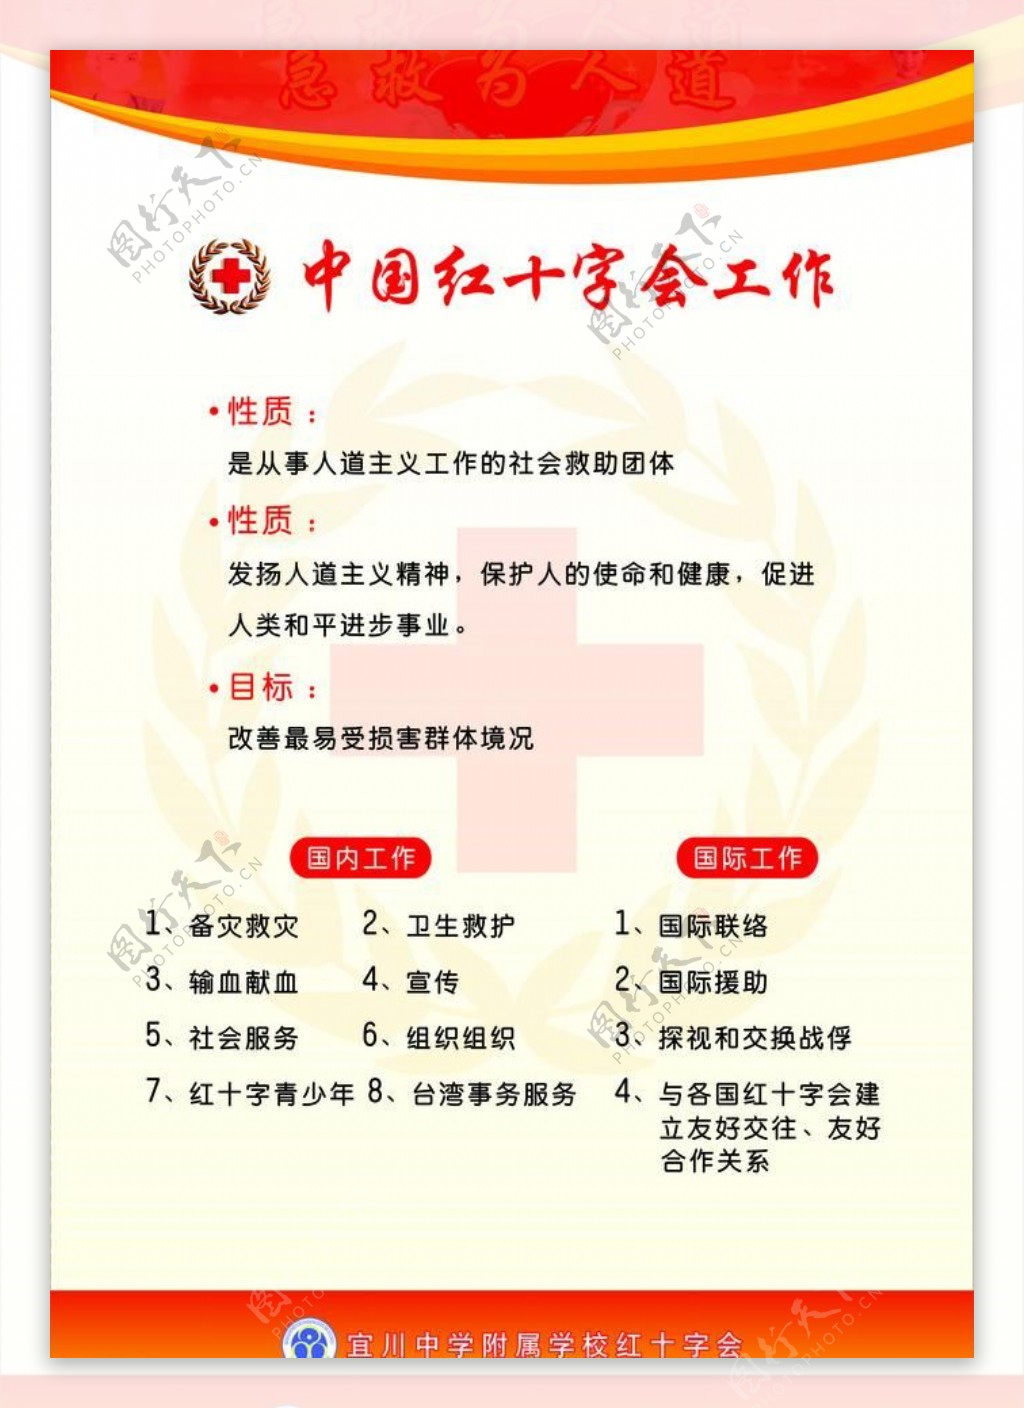 中国红十字会工作图片